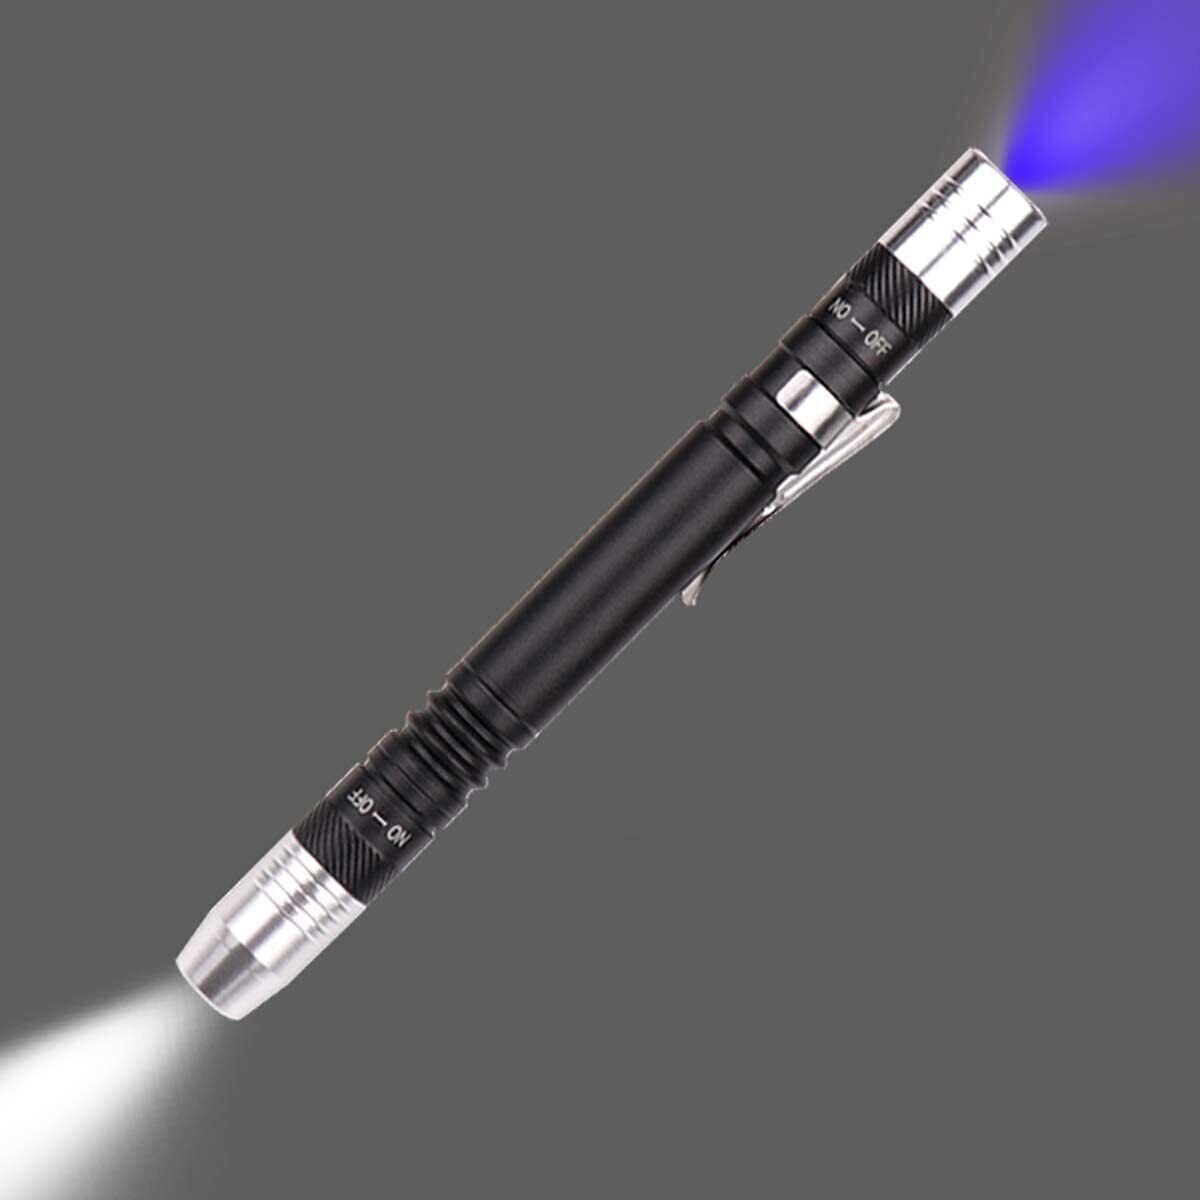 Mini UV Taschenlampe LED Lampe 395nm SchwarzlichtBernstein Schwarzlich Handlampe